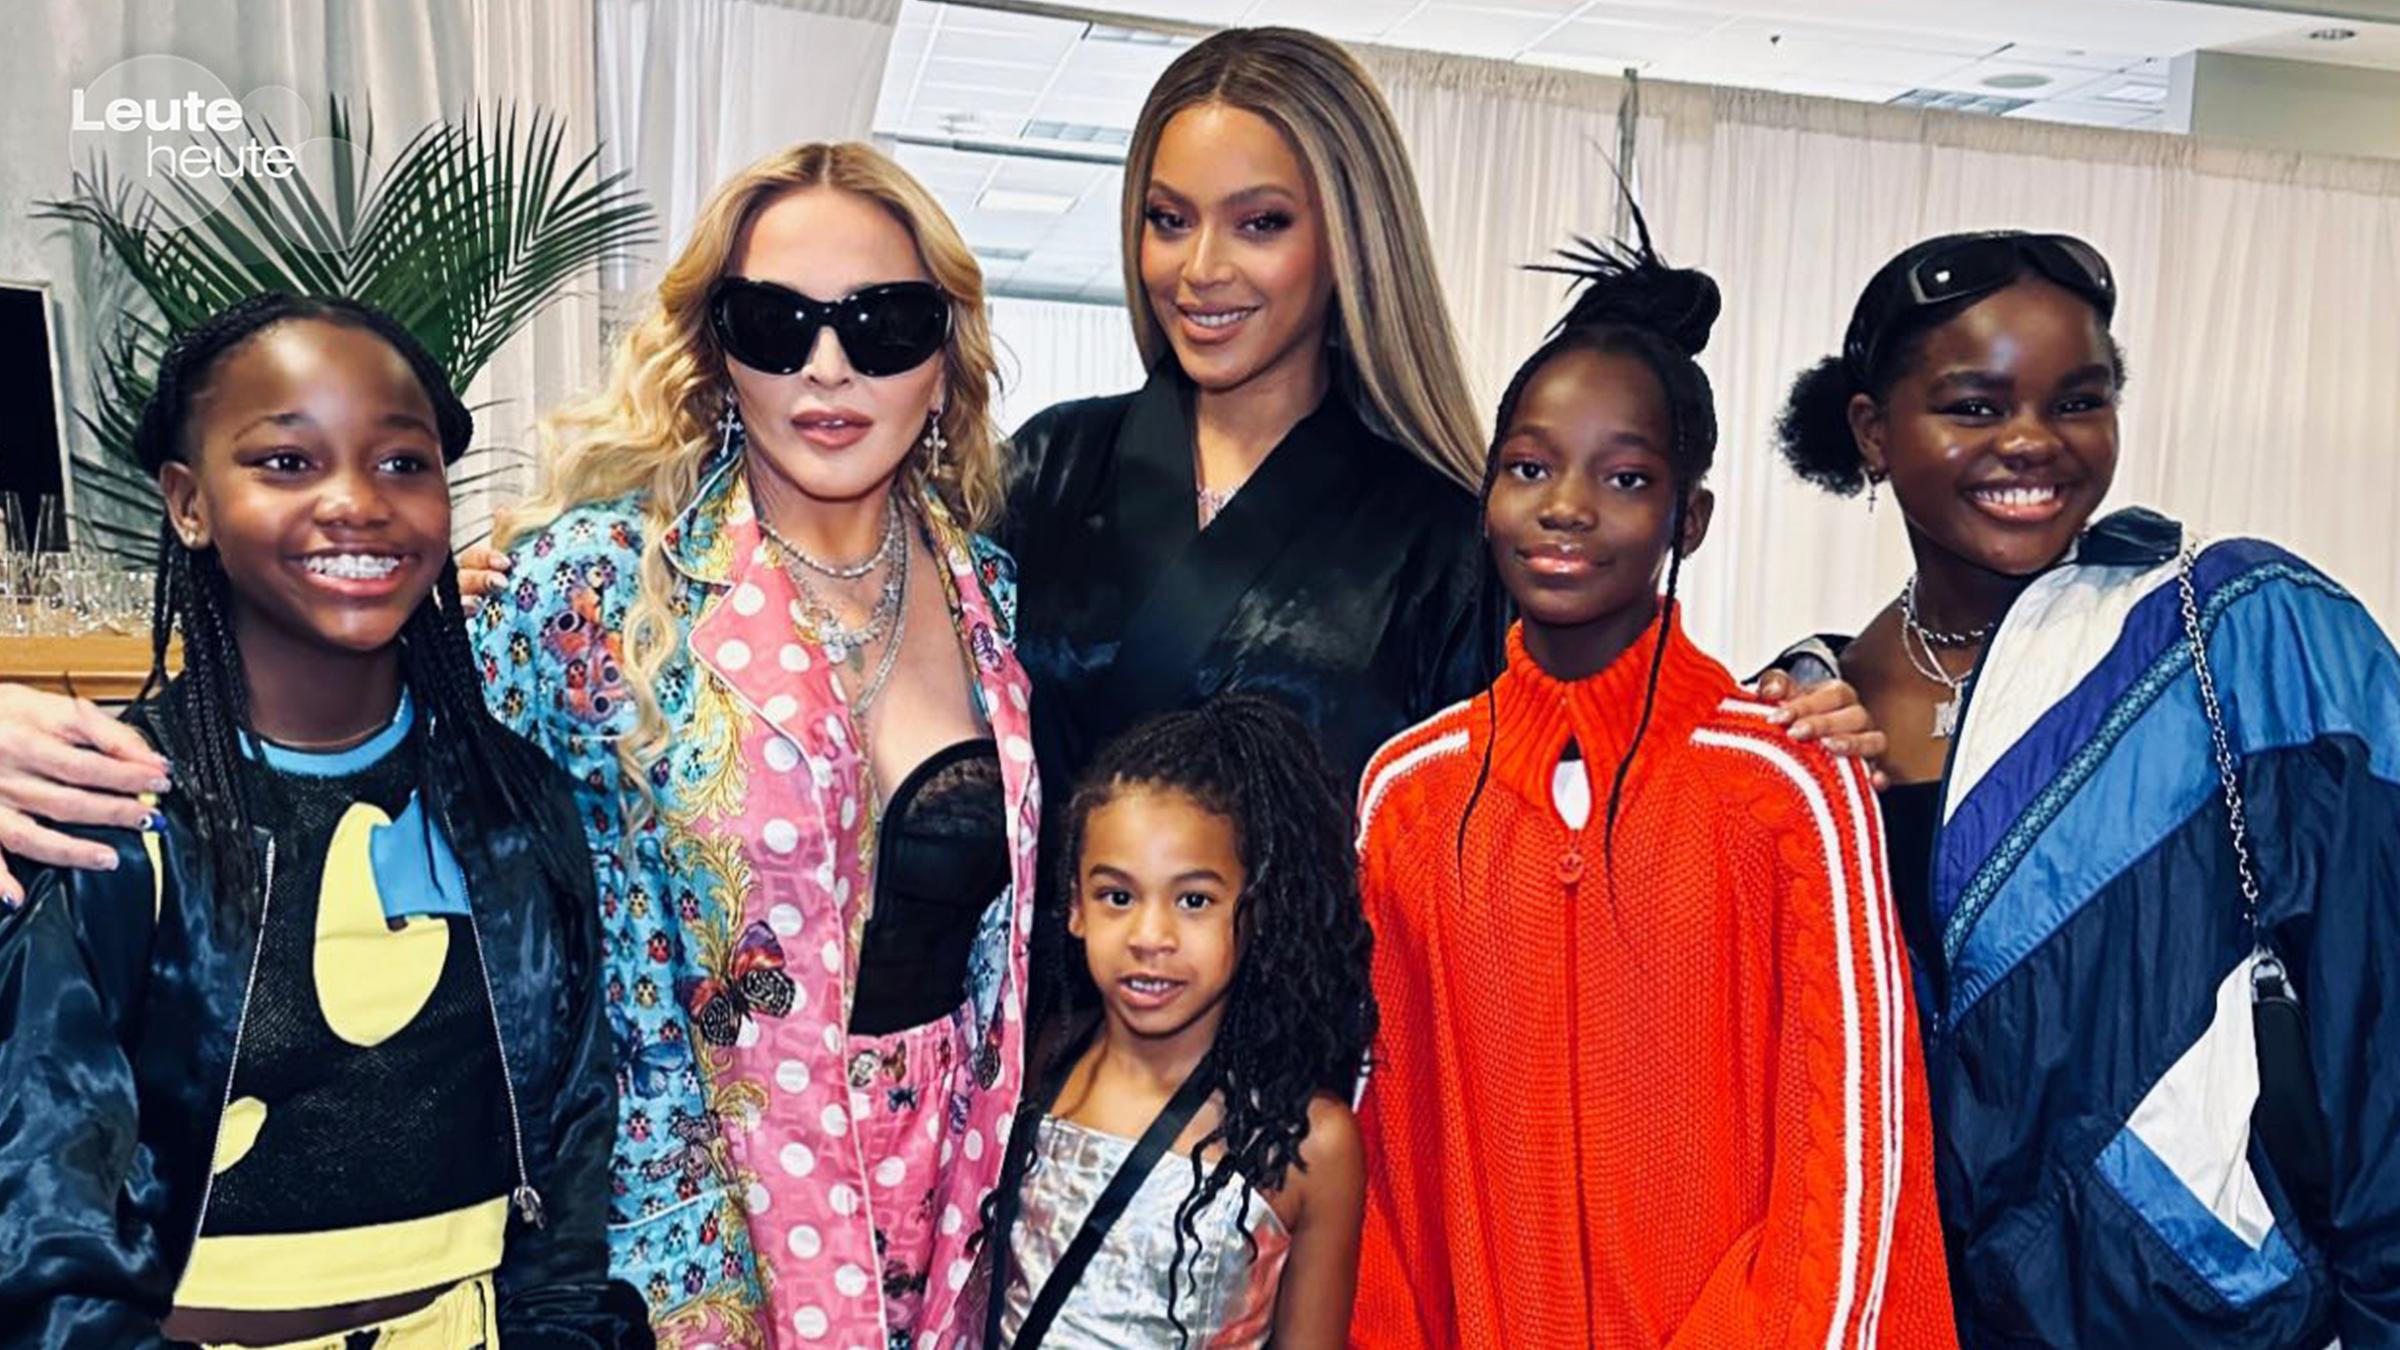 Gruppenbild mit den Ikonen Madonna und Beyoncé mit den Kindern der Sängerinnen.